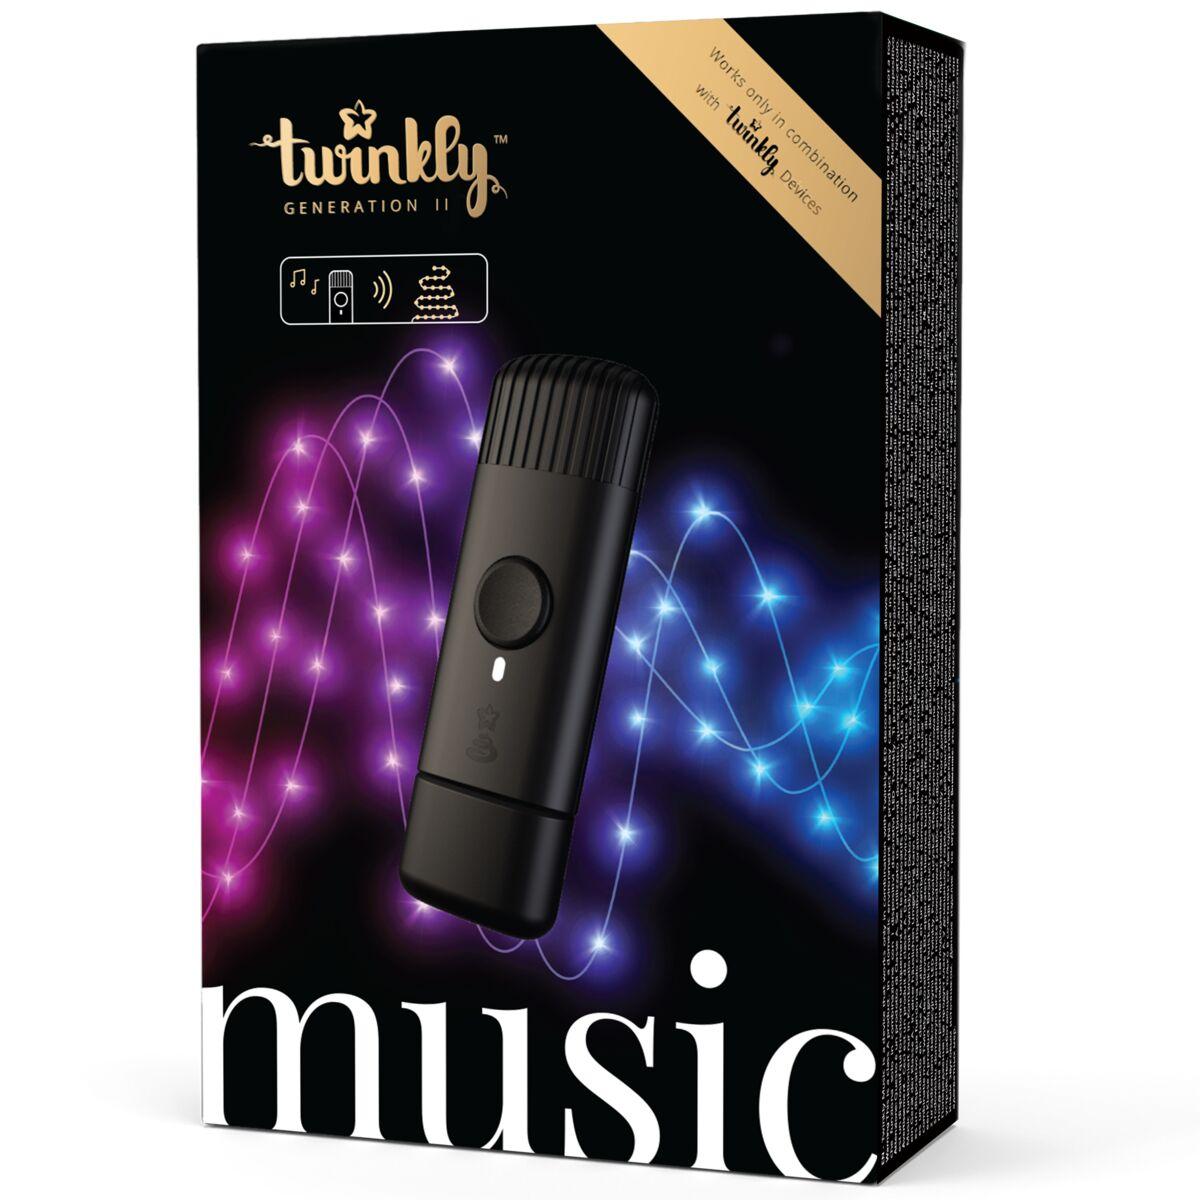 جهاز ربط الموسيقى بالإضاءة USB-Powered Wi-Fi Music-Player Dongle - TWINKLY MUSIC - cG9zdDo1NzkxMDc=